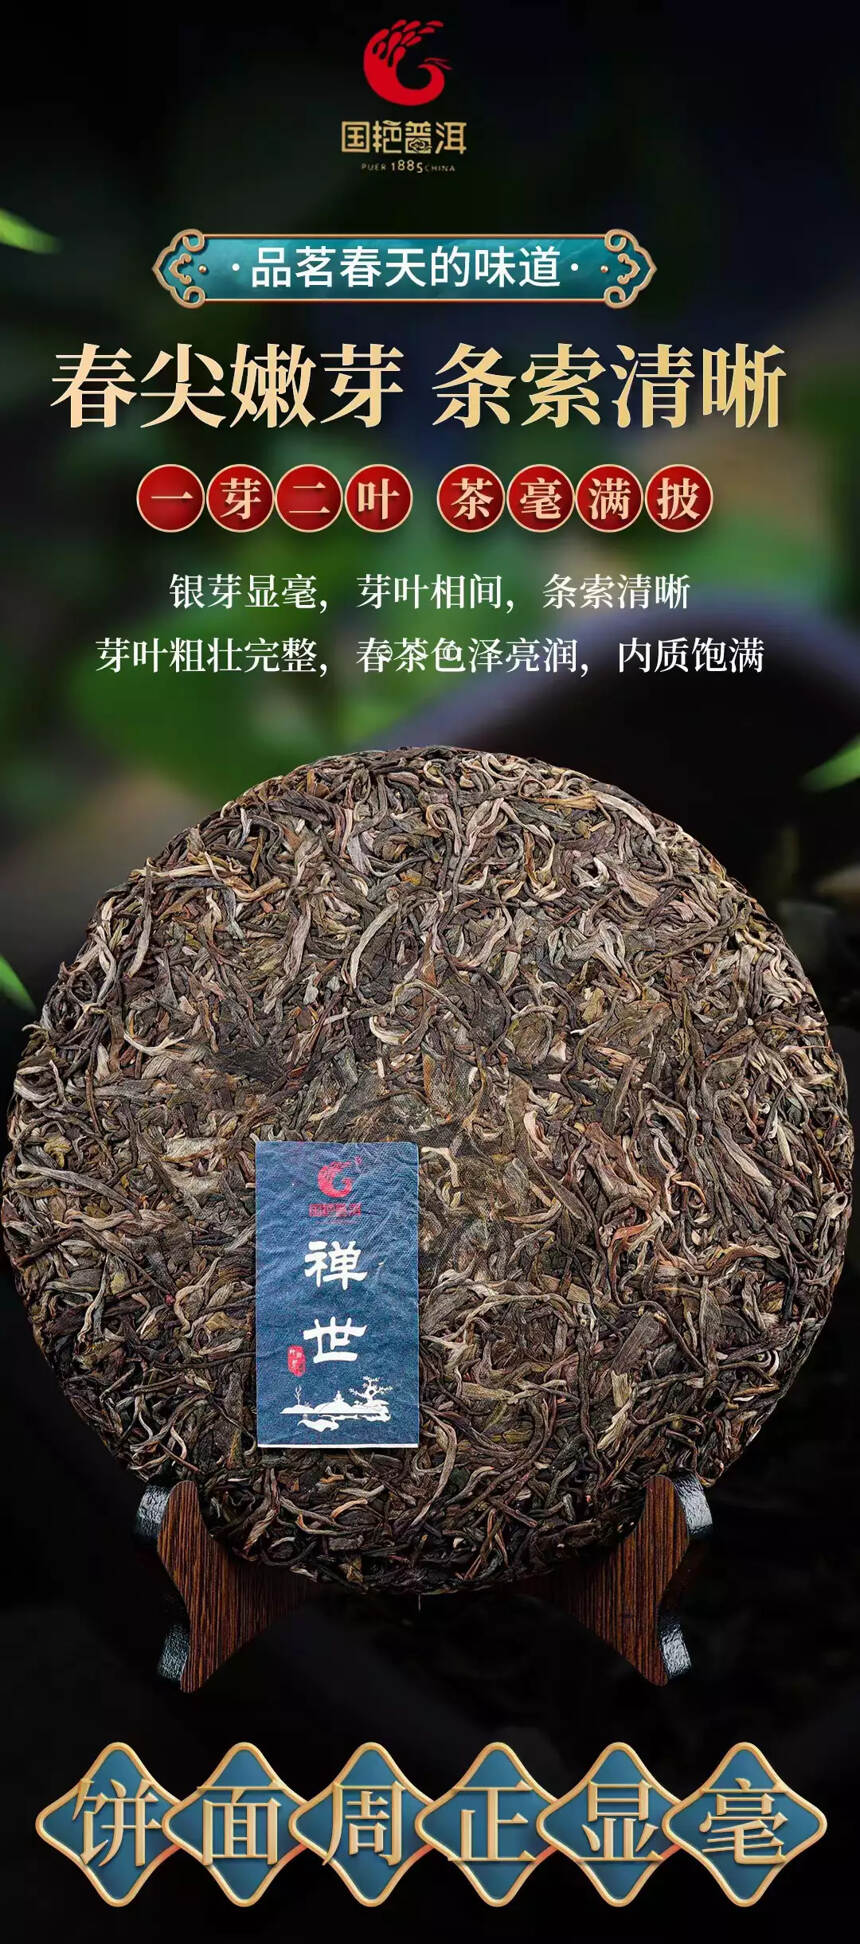 国艳茶厂2021年第一春
刚中带柔，柔中带甜，禅世国